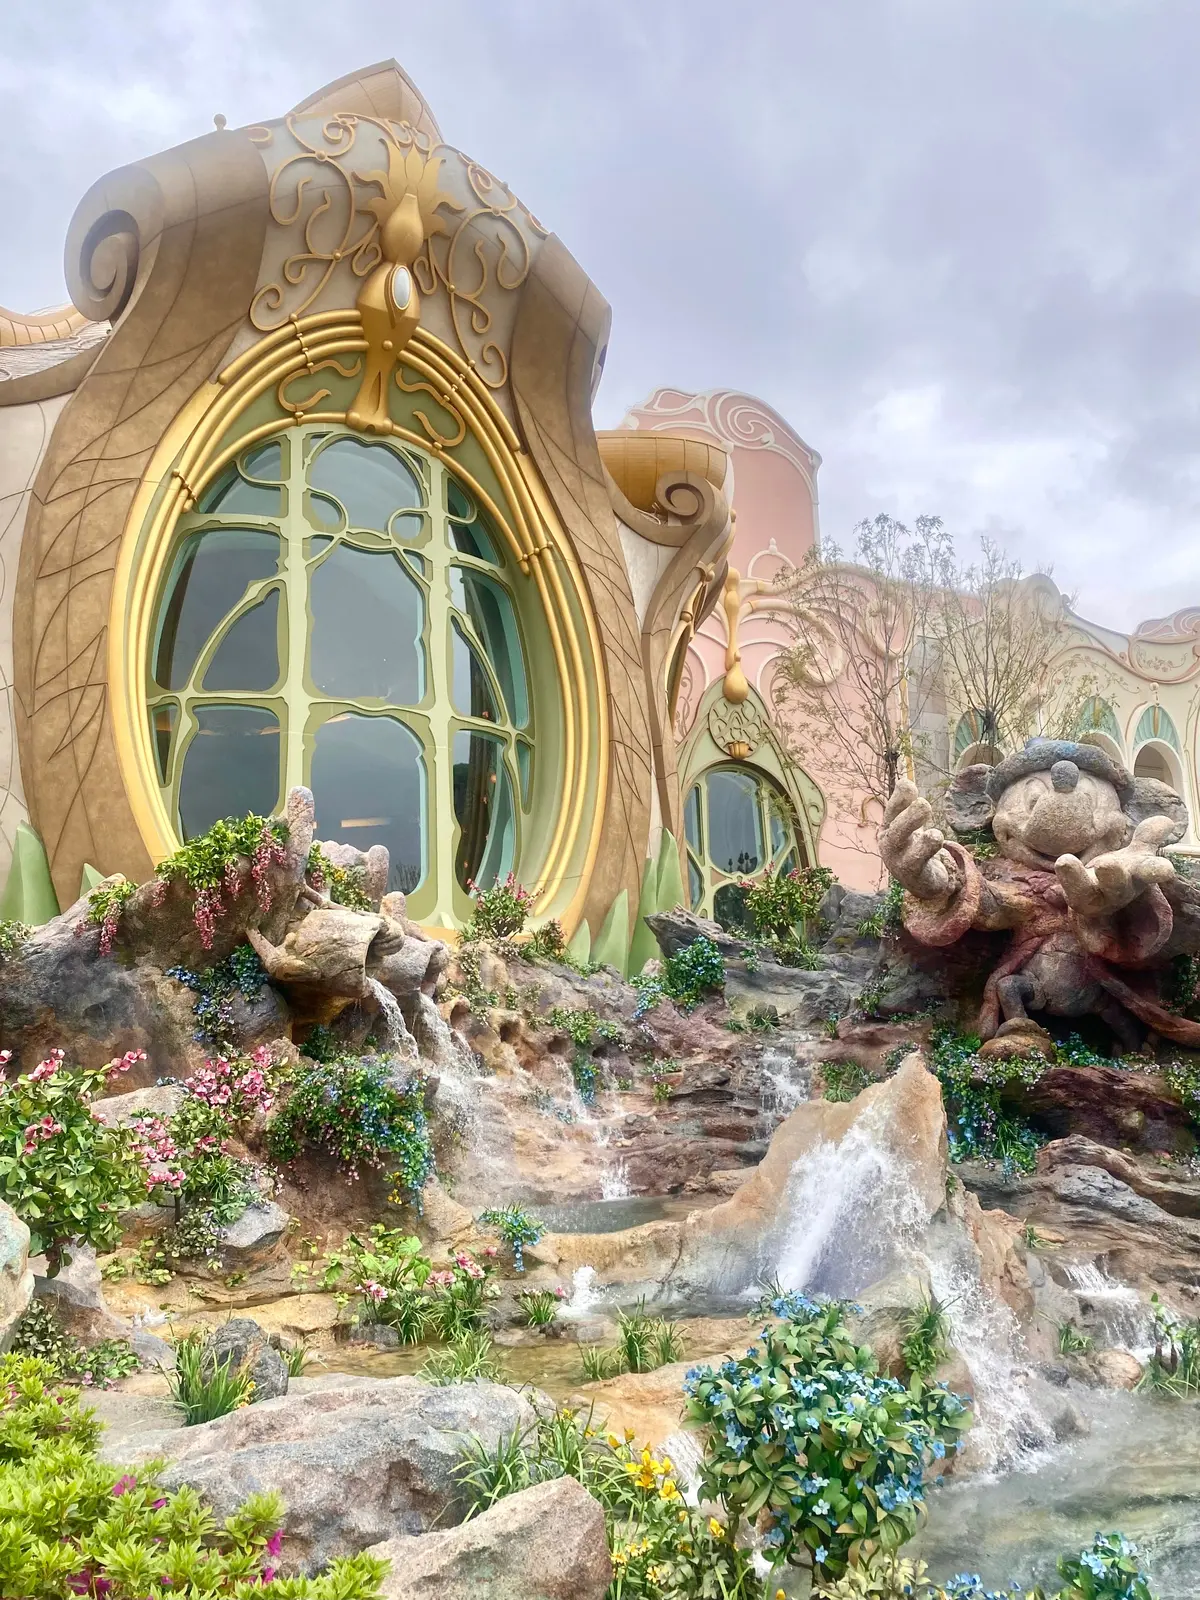 映画『ファンタジア』のミッキーマウスを岩で表現した魔法の泉